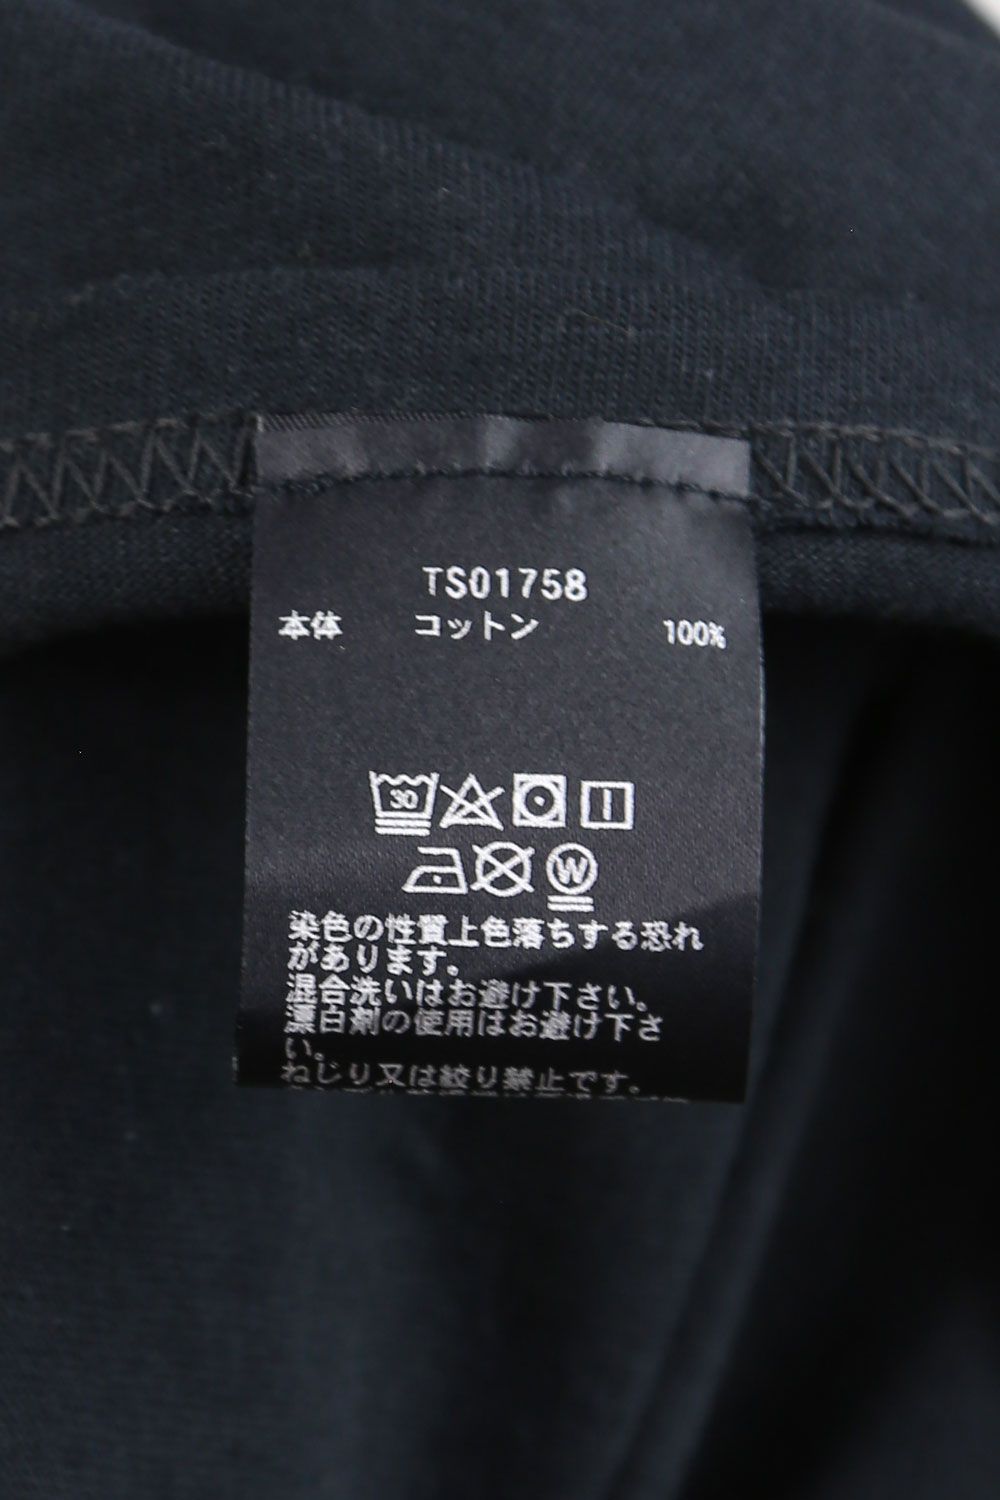 SALE／104%OFF】 極美品 激レア HUF Tシャツ サイコロ柄 ブラック Lサイズ ハフ